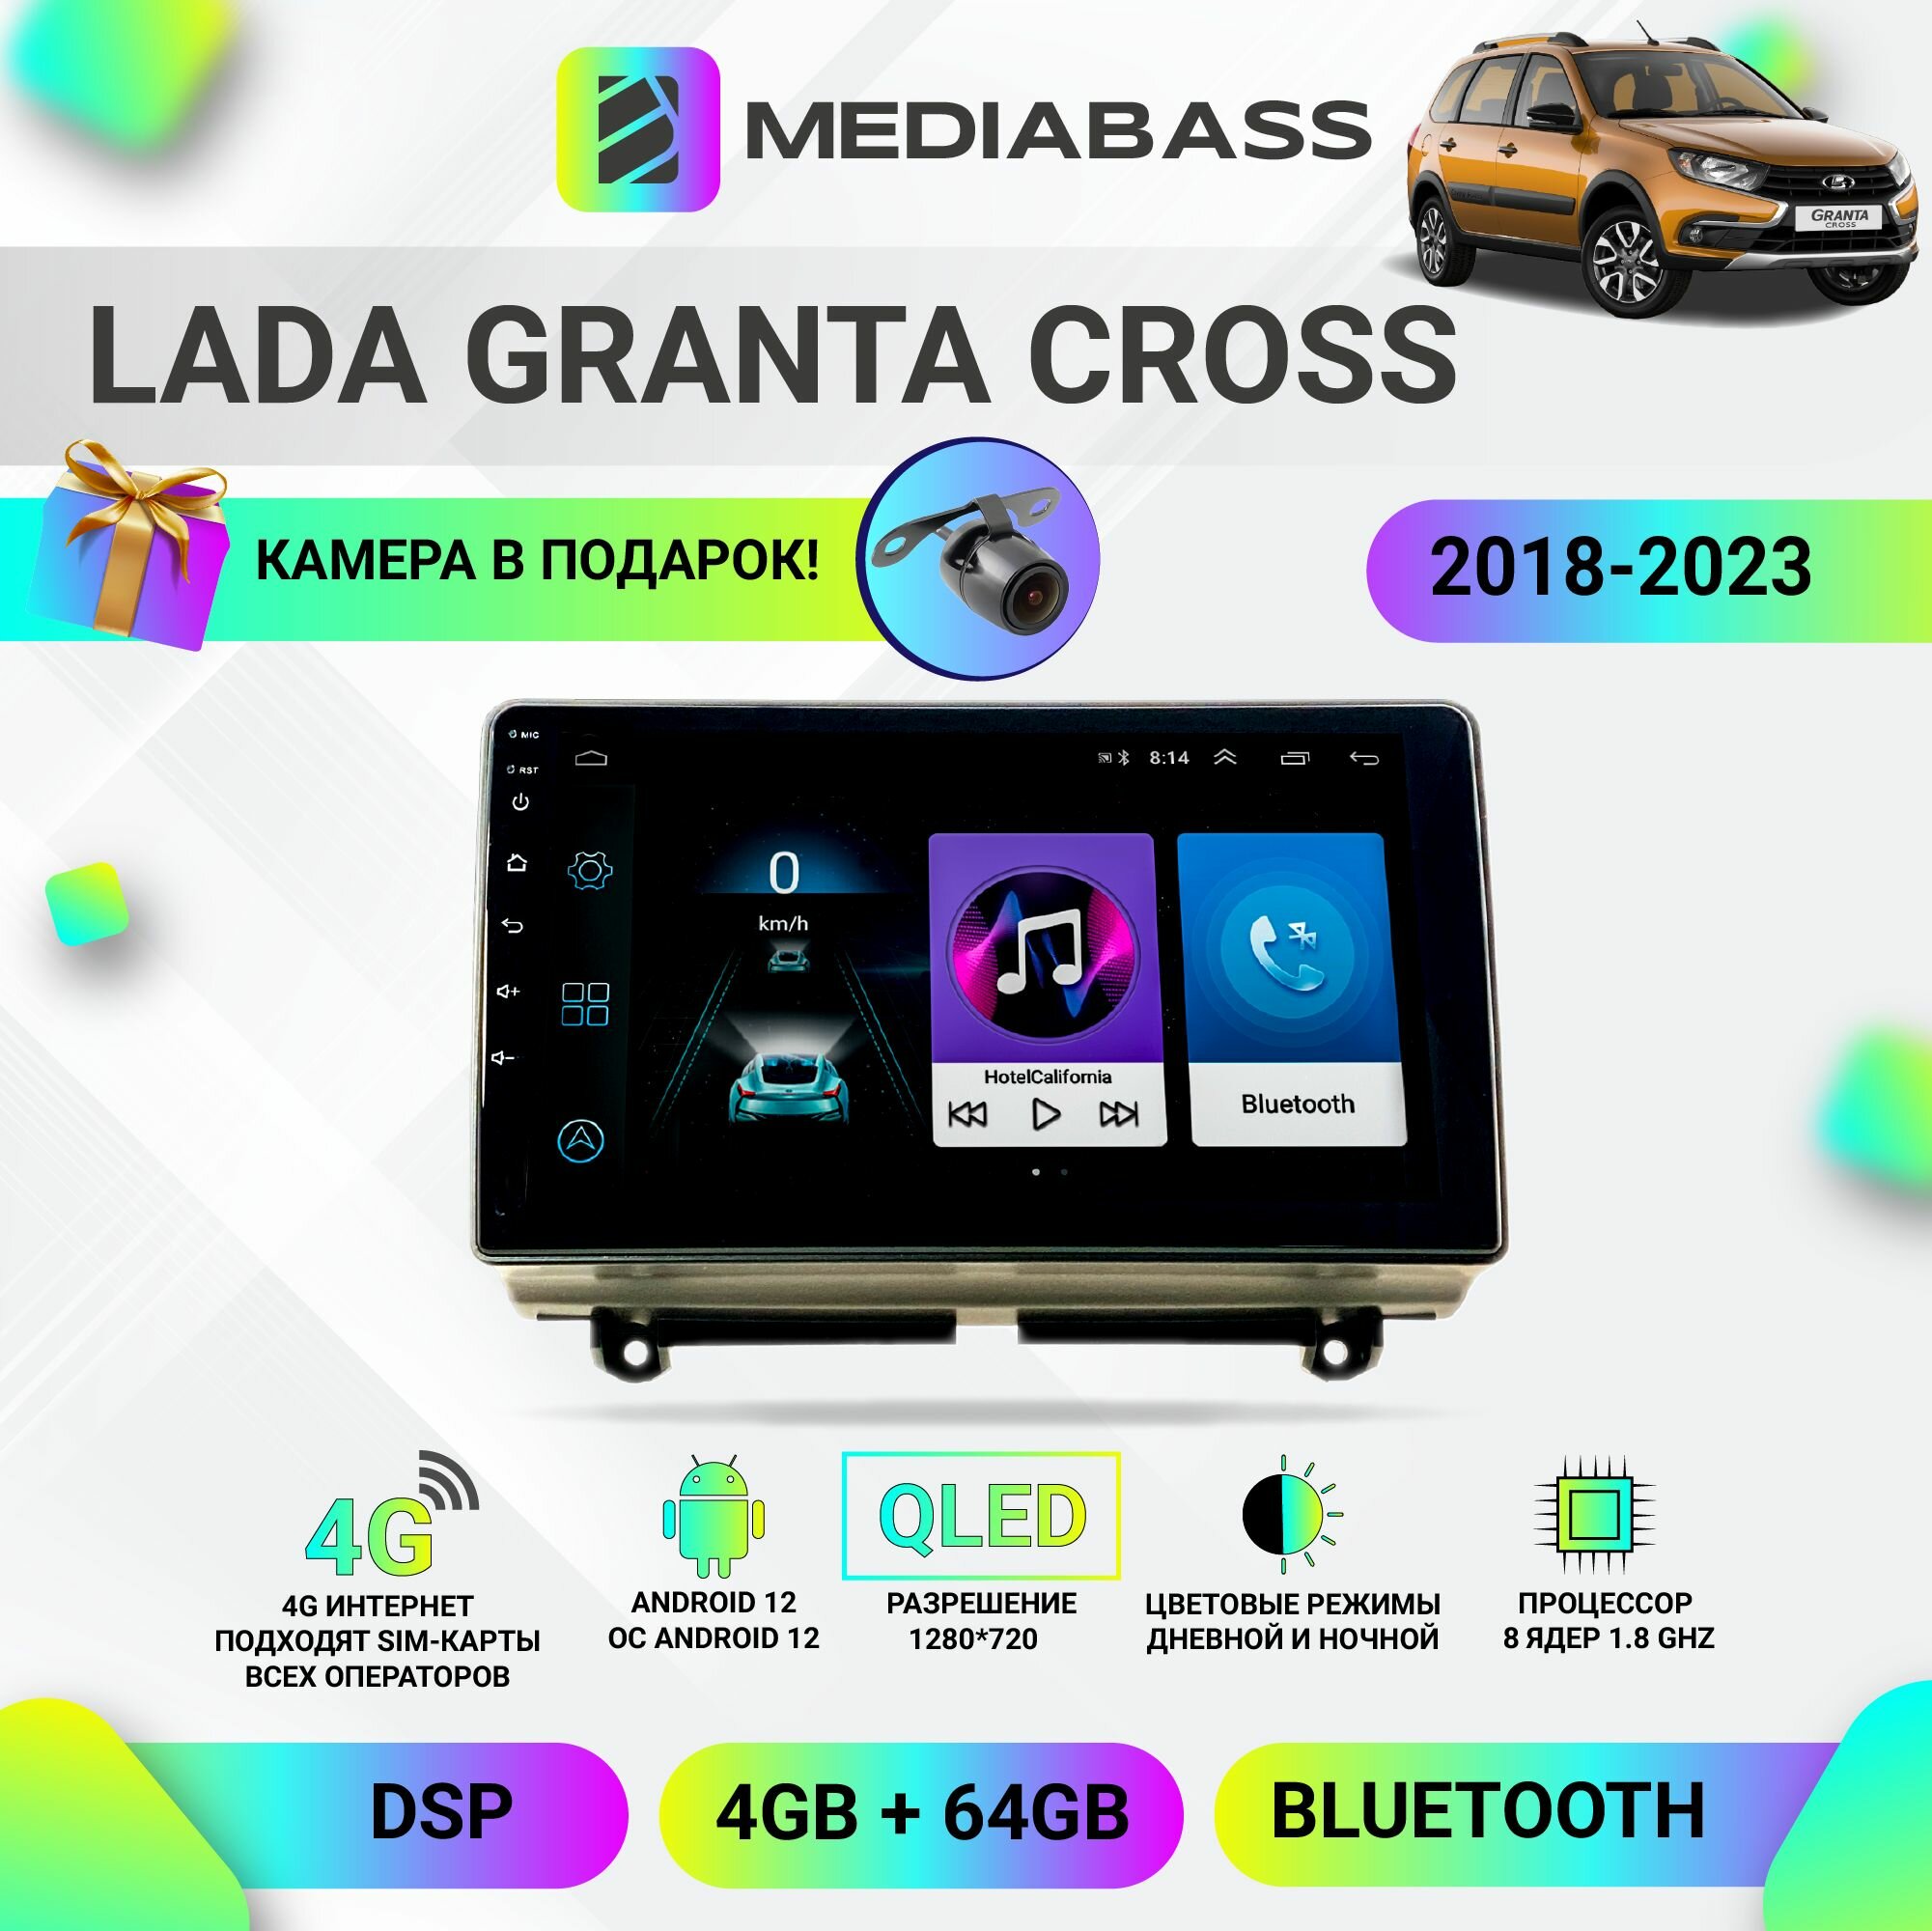 Автомагнитола MEDIABASS M4 Lada Granta Cross 2018-2023, Android 12, 4/64GB, 8-ядерный процессор, DSP, 4G модем, чип-усилитель TDA7851 Лада Гранта